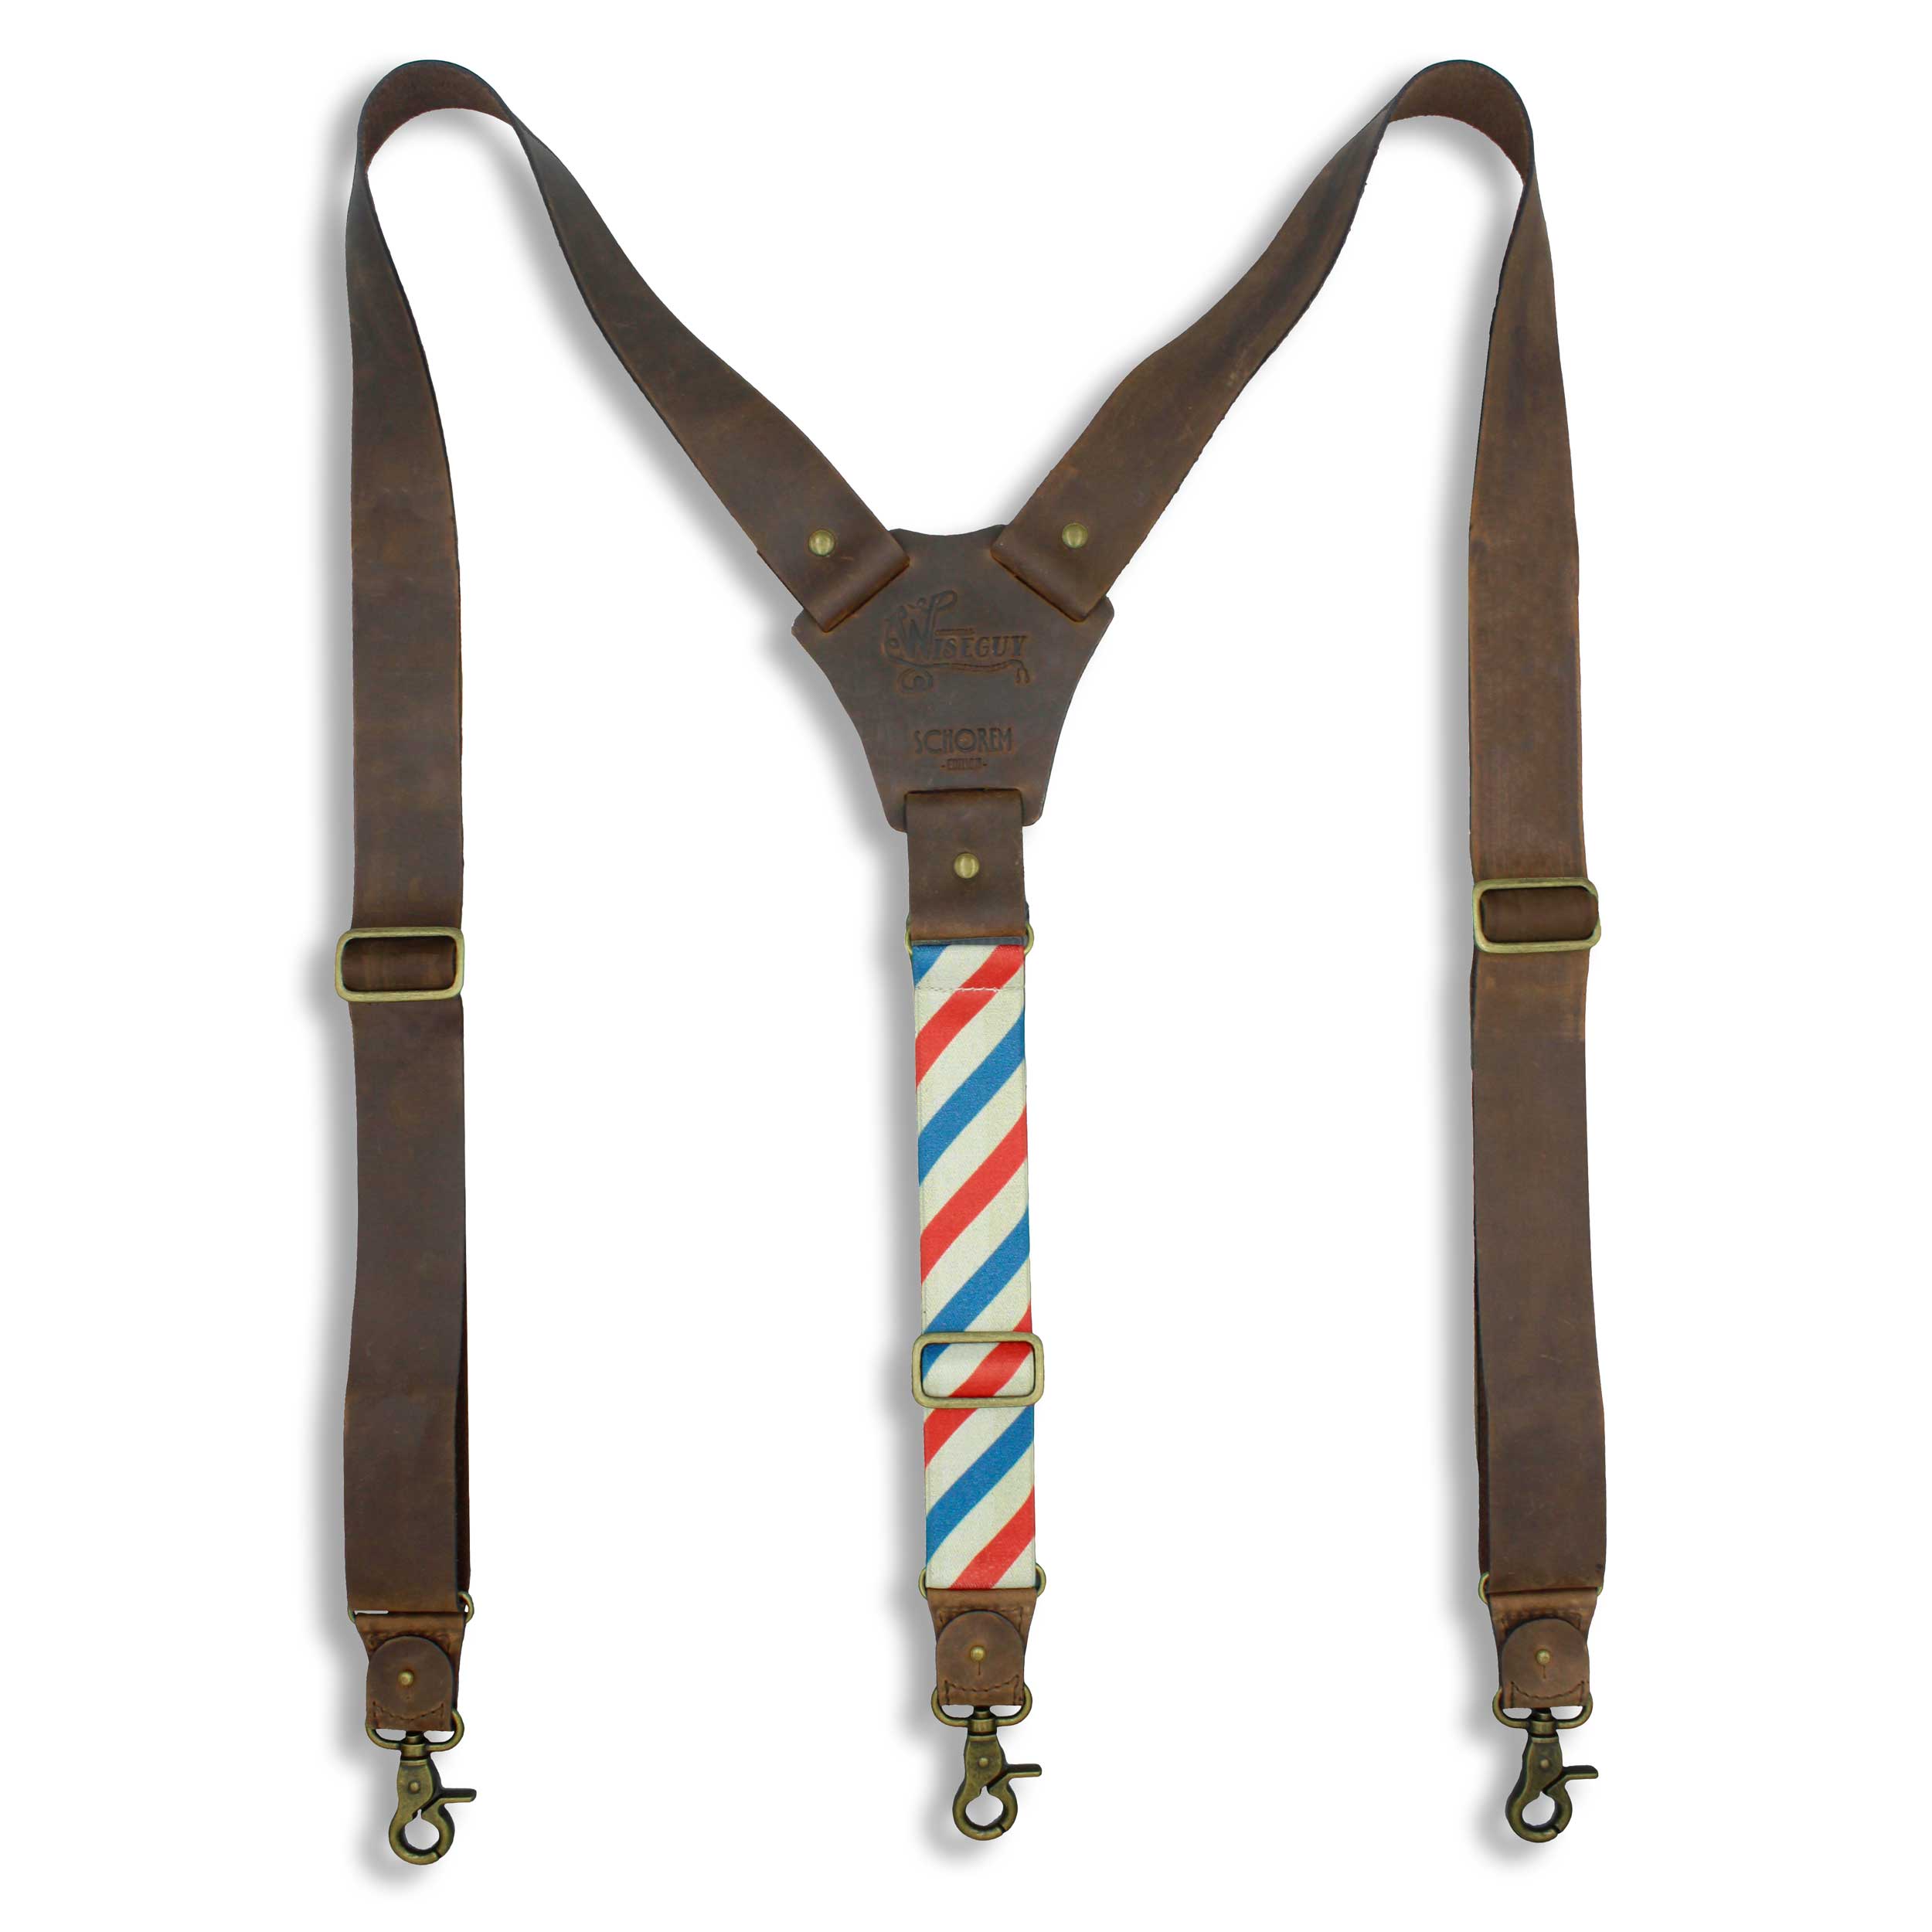 Schorem FLEX - Wiseguy Suspenders 1.36 inch/3.5 cm wide - Wiseguy Suspenders